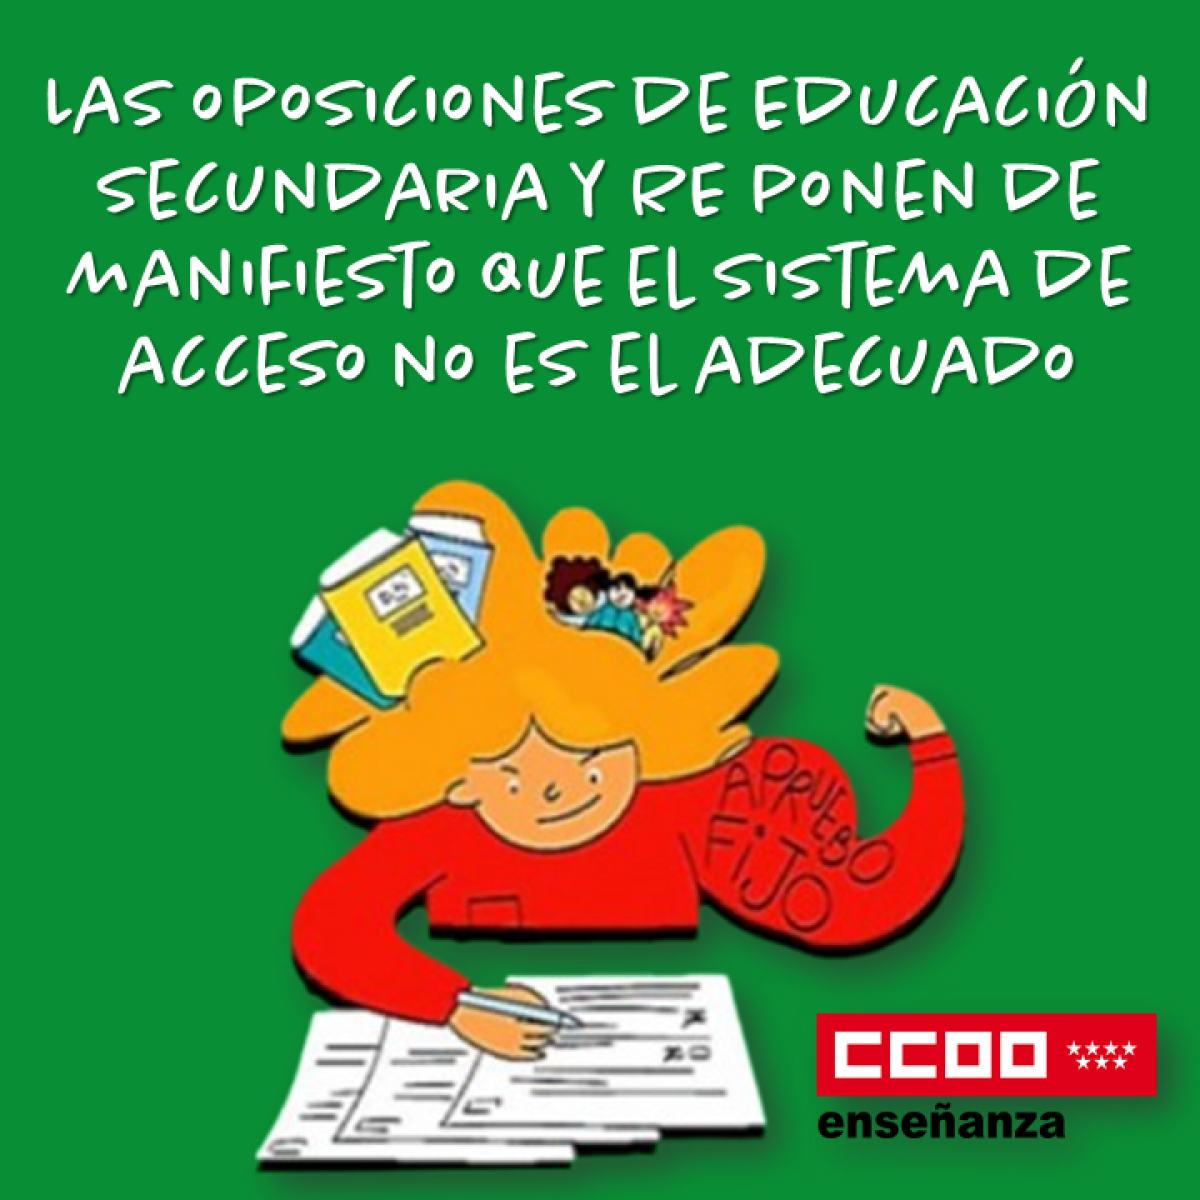 Las oposiciones de Educación Secundaria y RE ponen de manifiesto que el sistema de acceso no es el adecuado